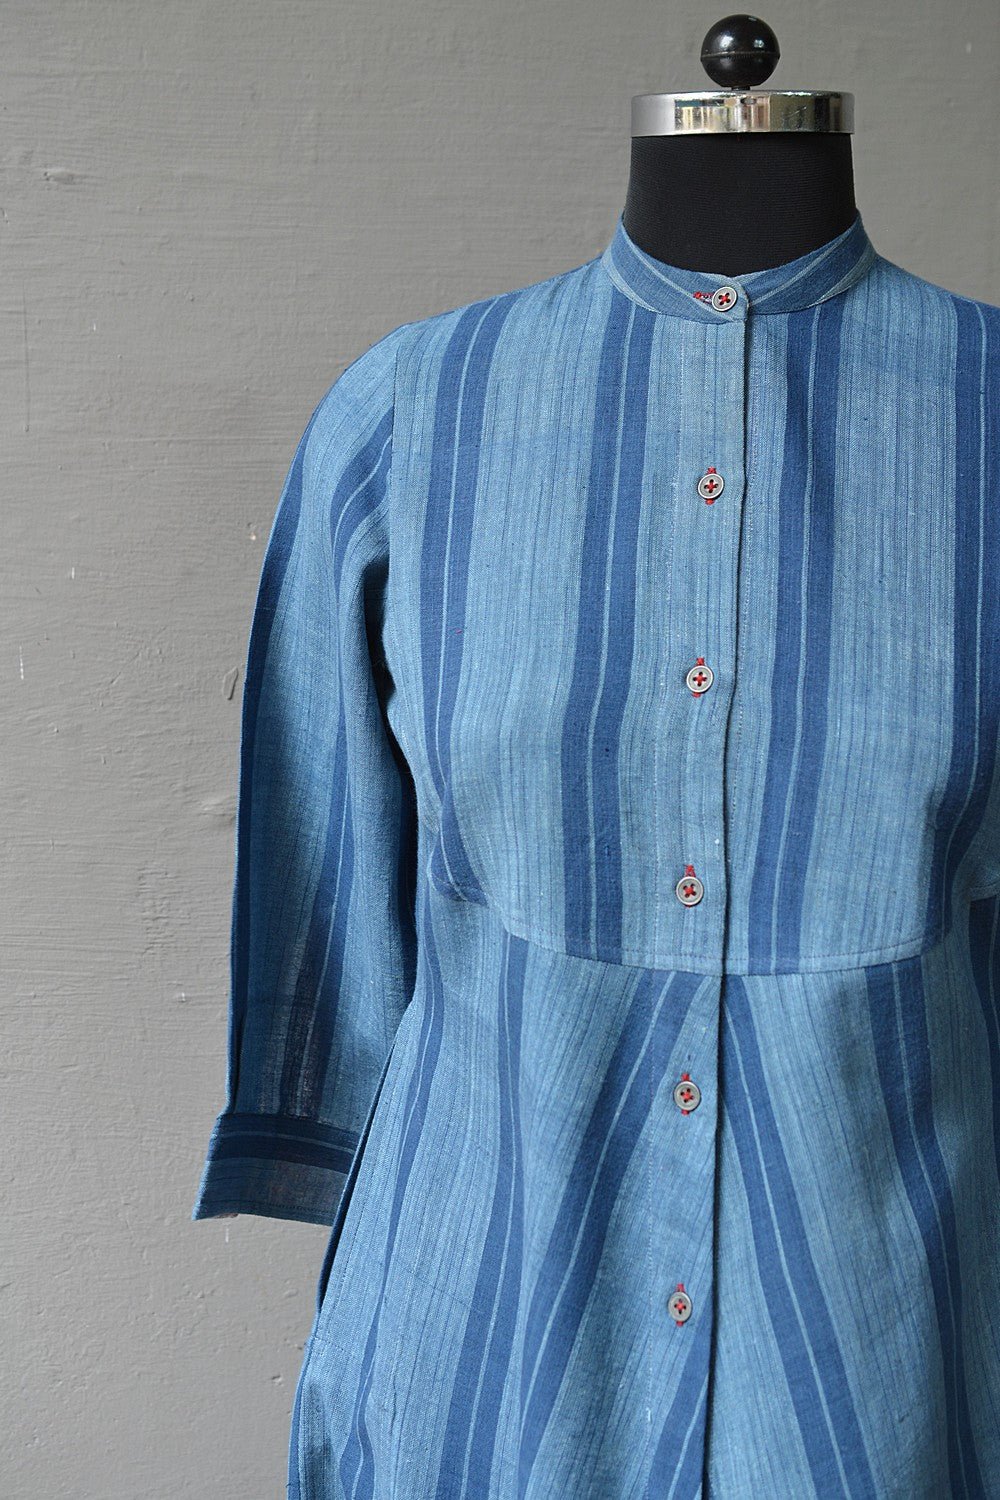 Uddavaada Dress | Fabric of freedom - metaphorracha